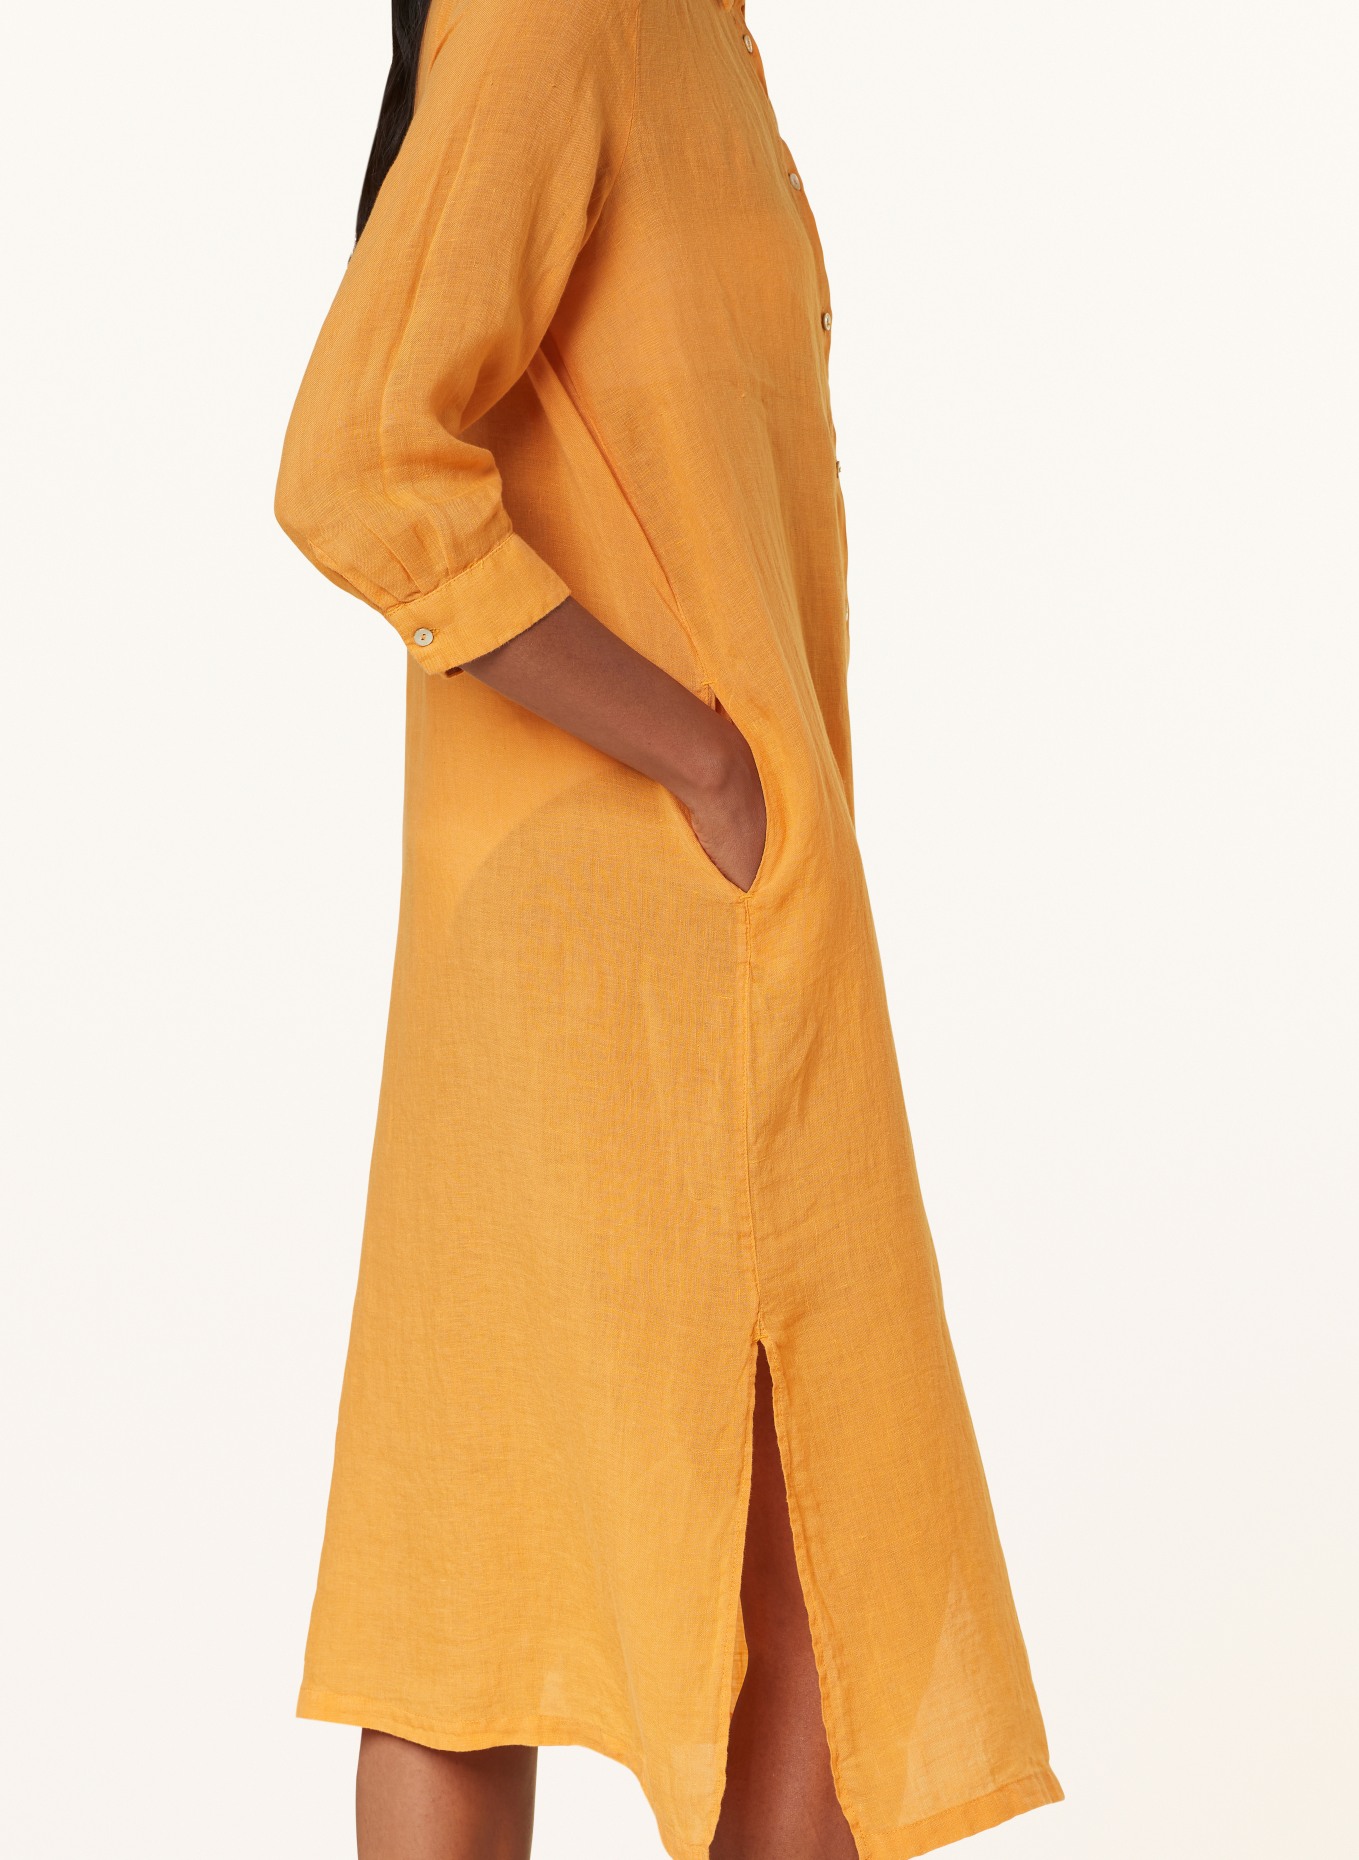 120%lino Beach dress made of linen, Color: ORANGE (Image 4)